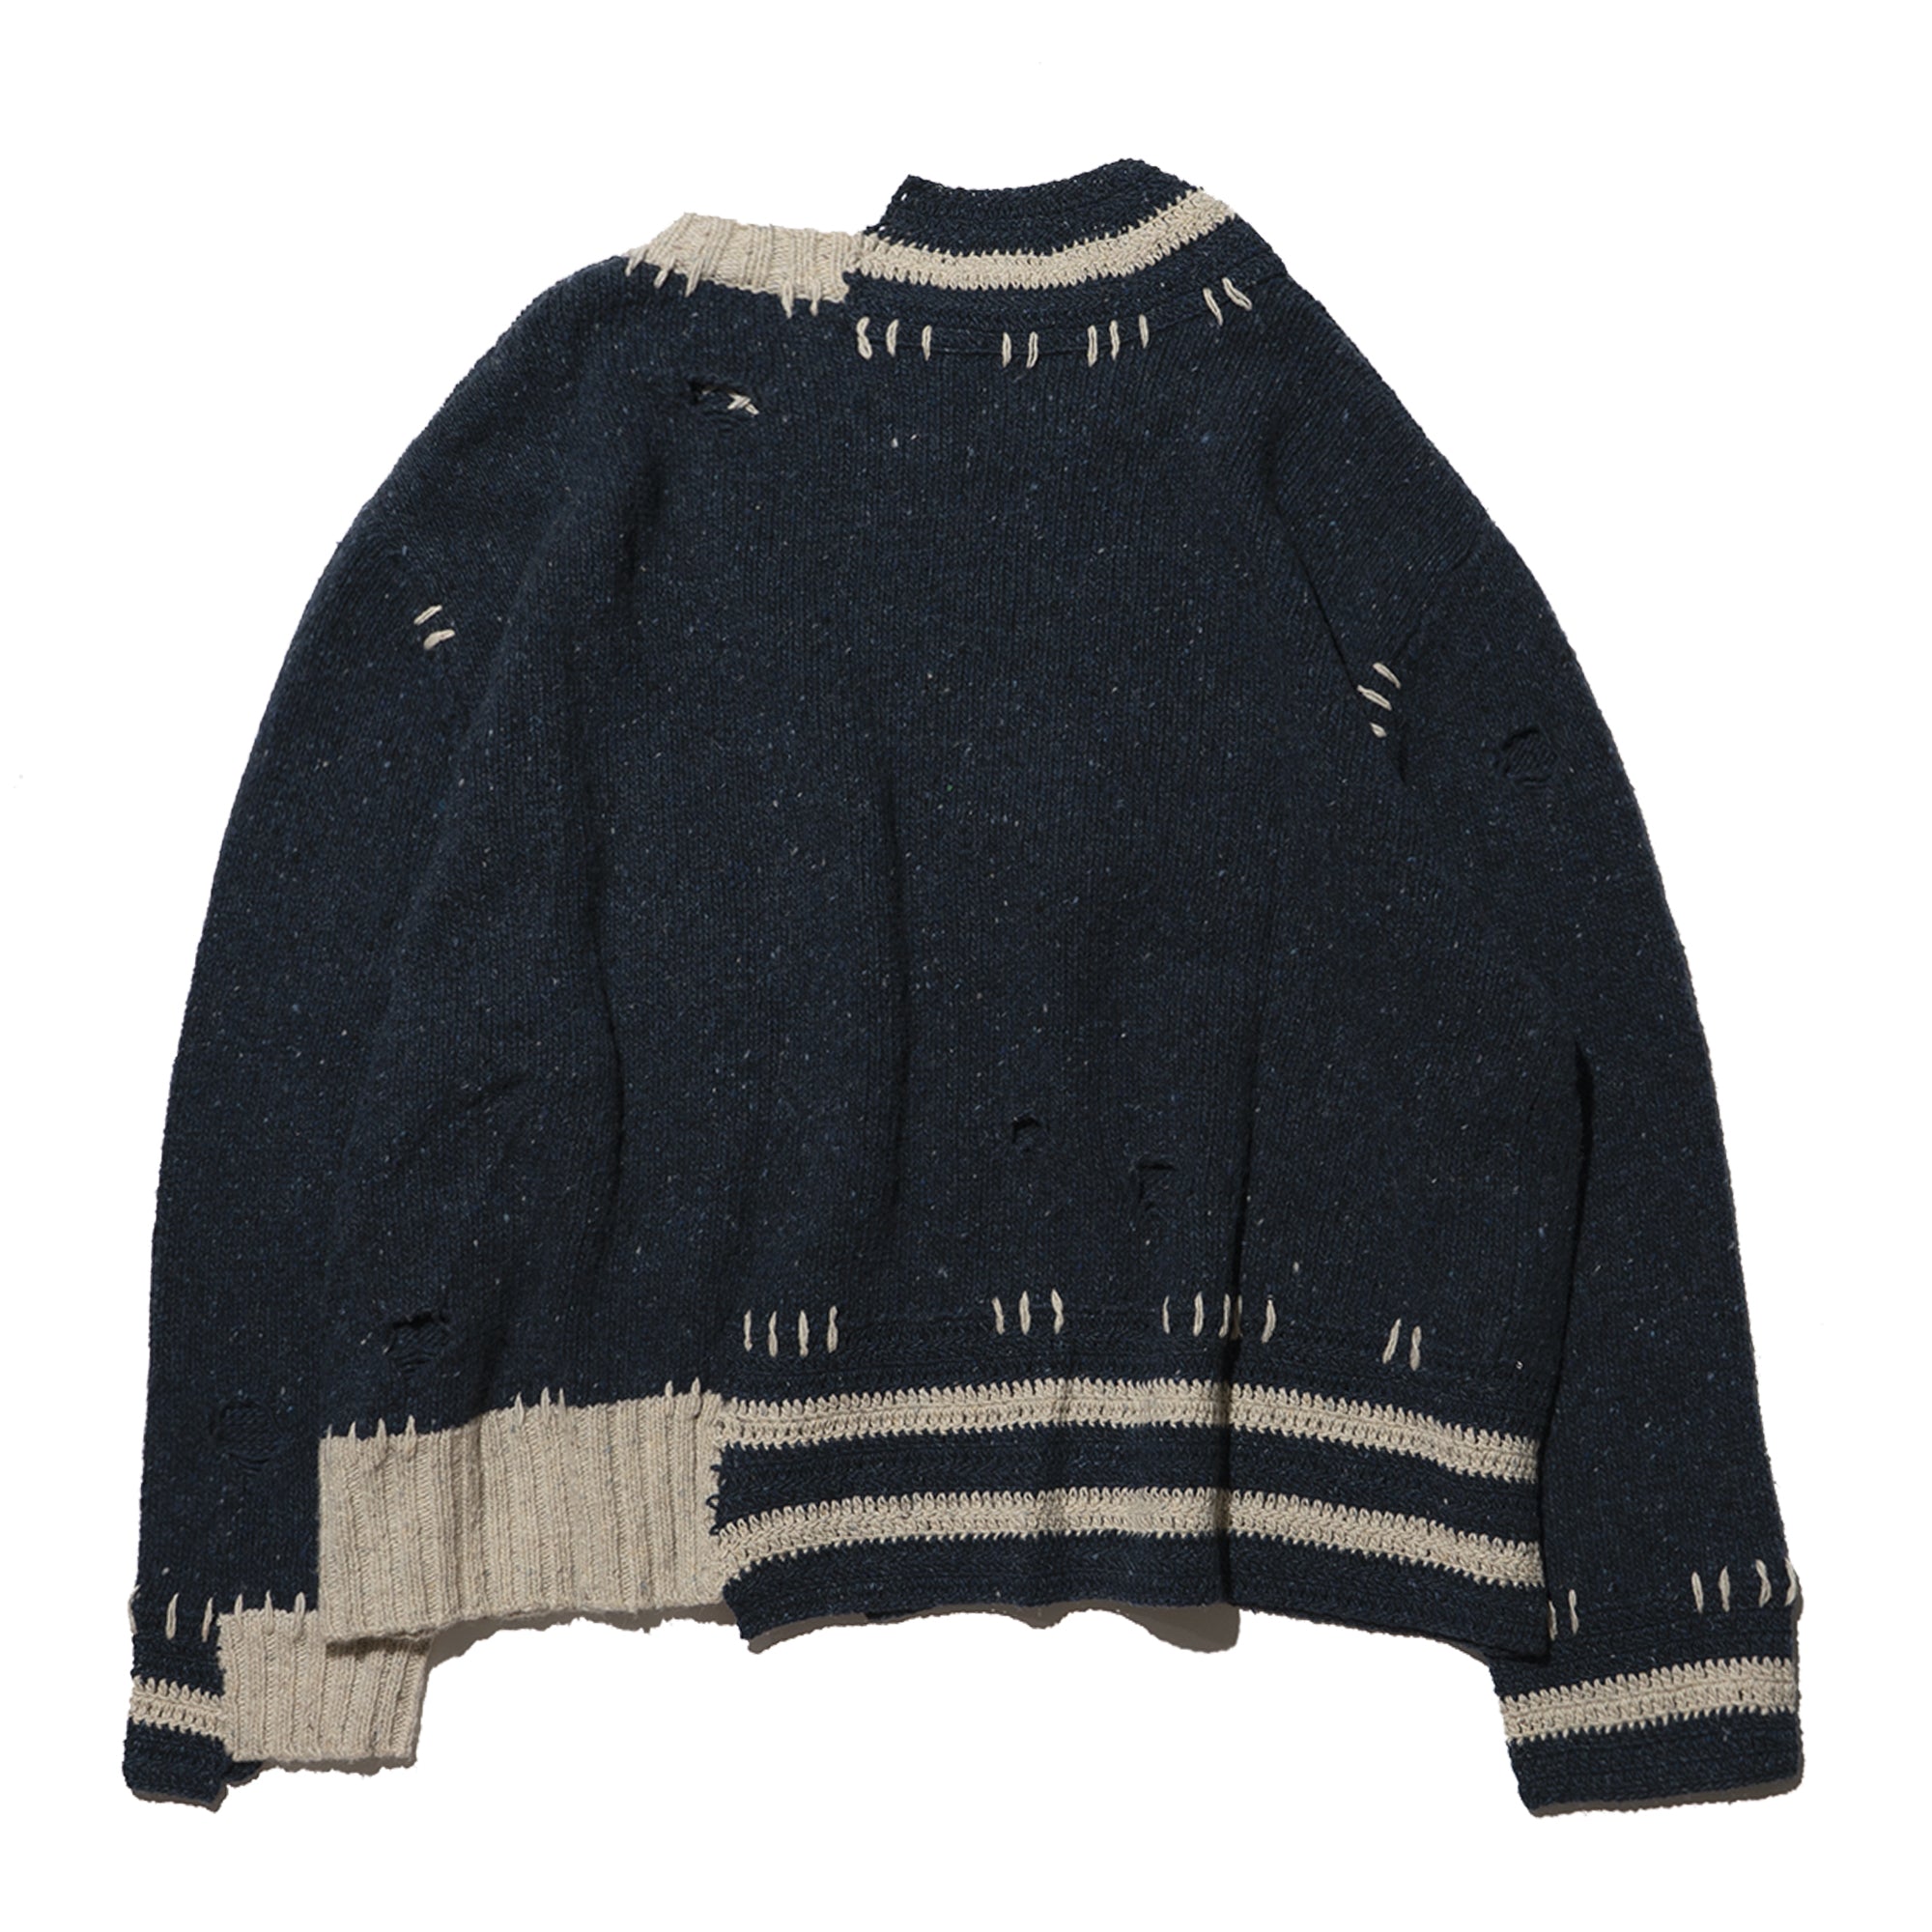 boro boro knit sweater